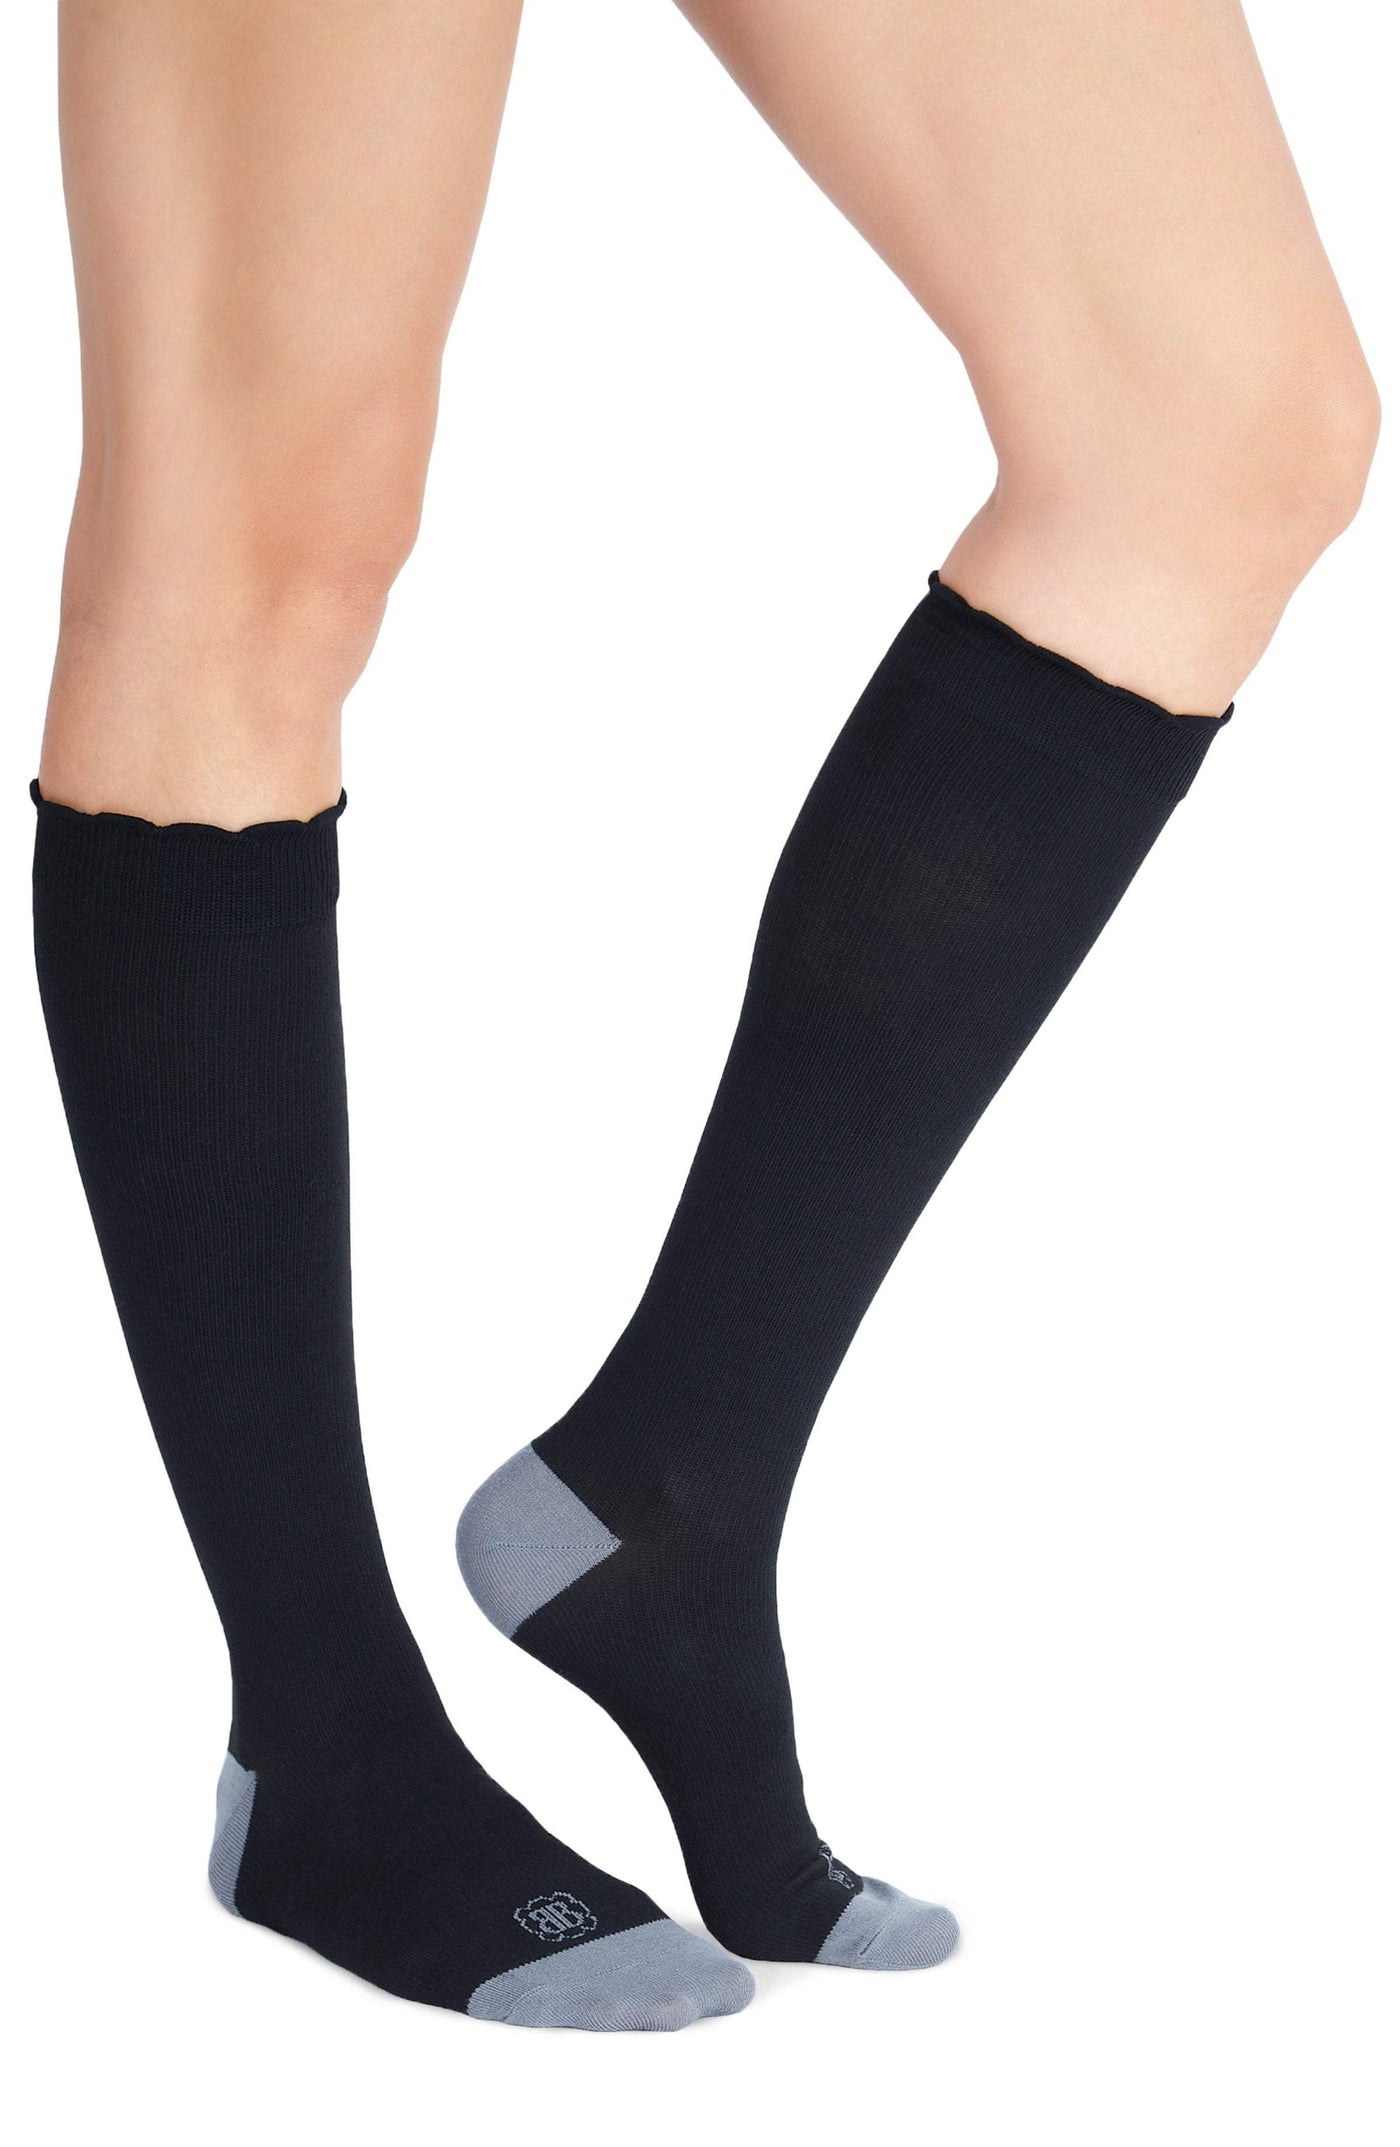 Belly Bandit Socks Belly Bandit® Compression Socks